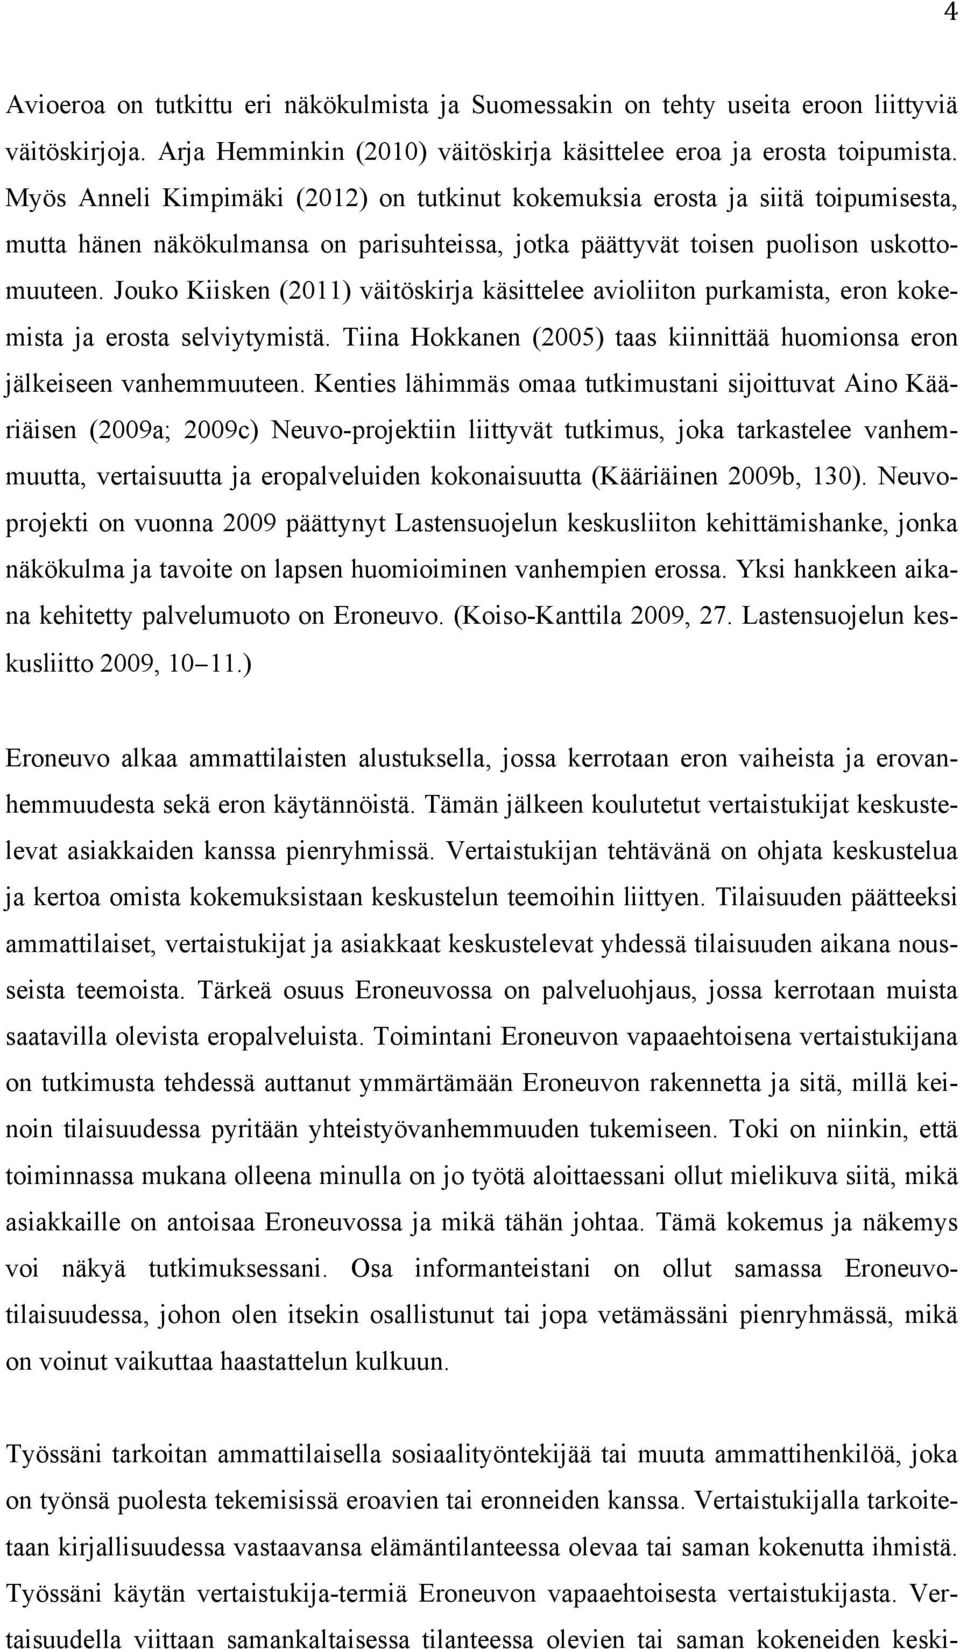 Jouko Kiisken (2011) väitöskirja käsittelee avioliiton purkamista, eron kokemista ja erosta selviytymistä. Tiina Hokkanen (2005) taas kiinnittää huomionsa eron jälkeiseen vanhemmuuteen.